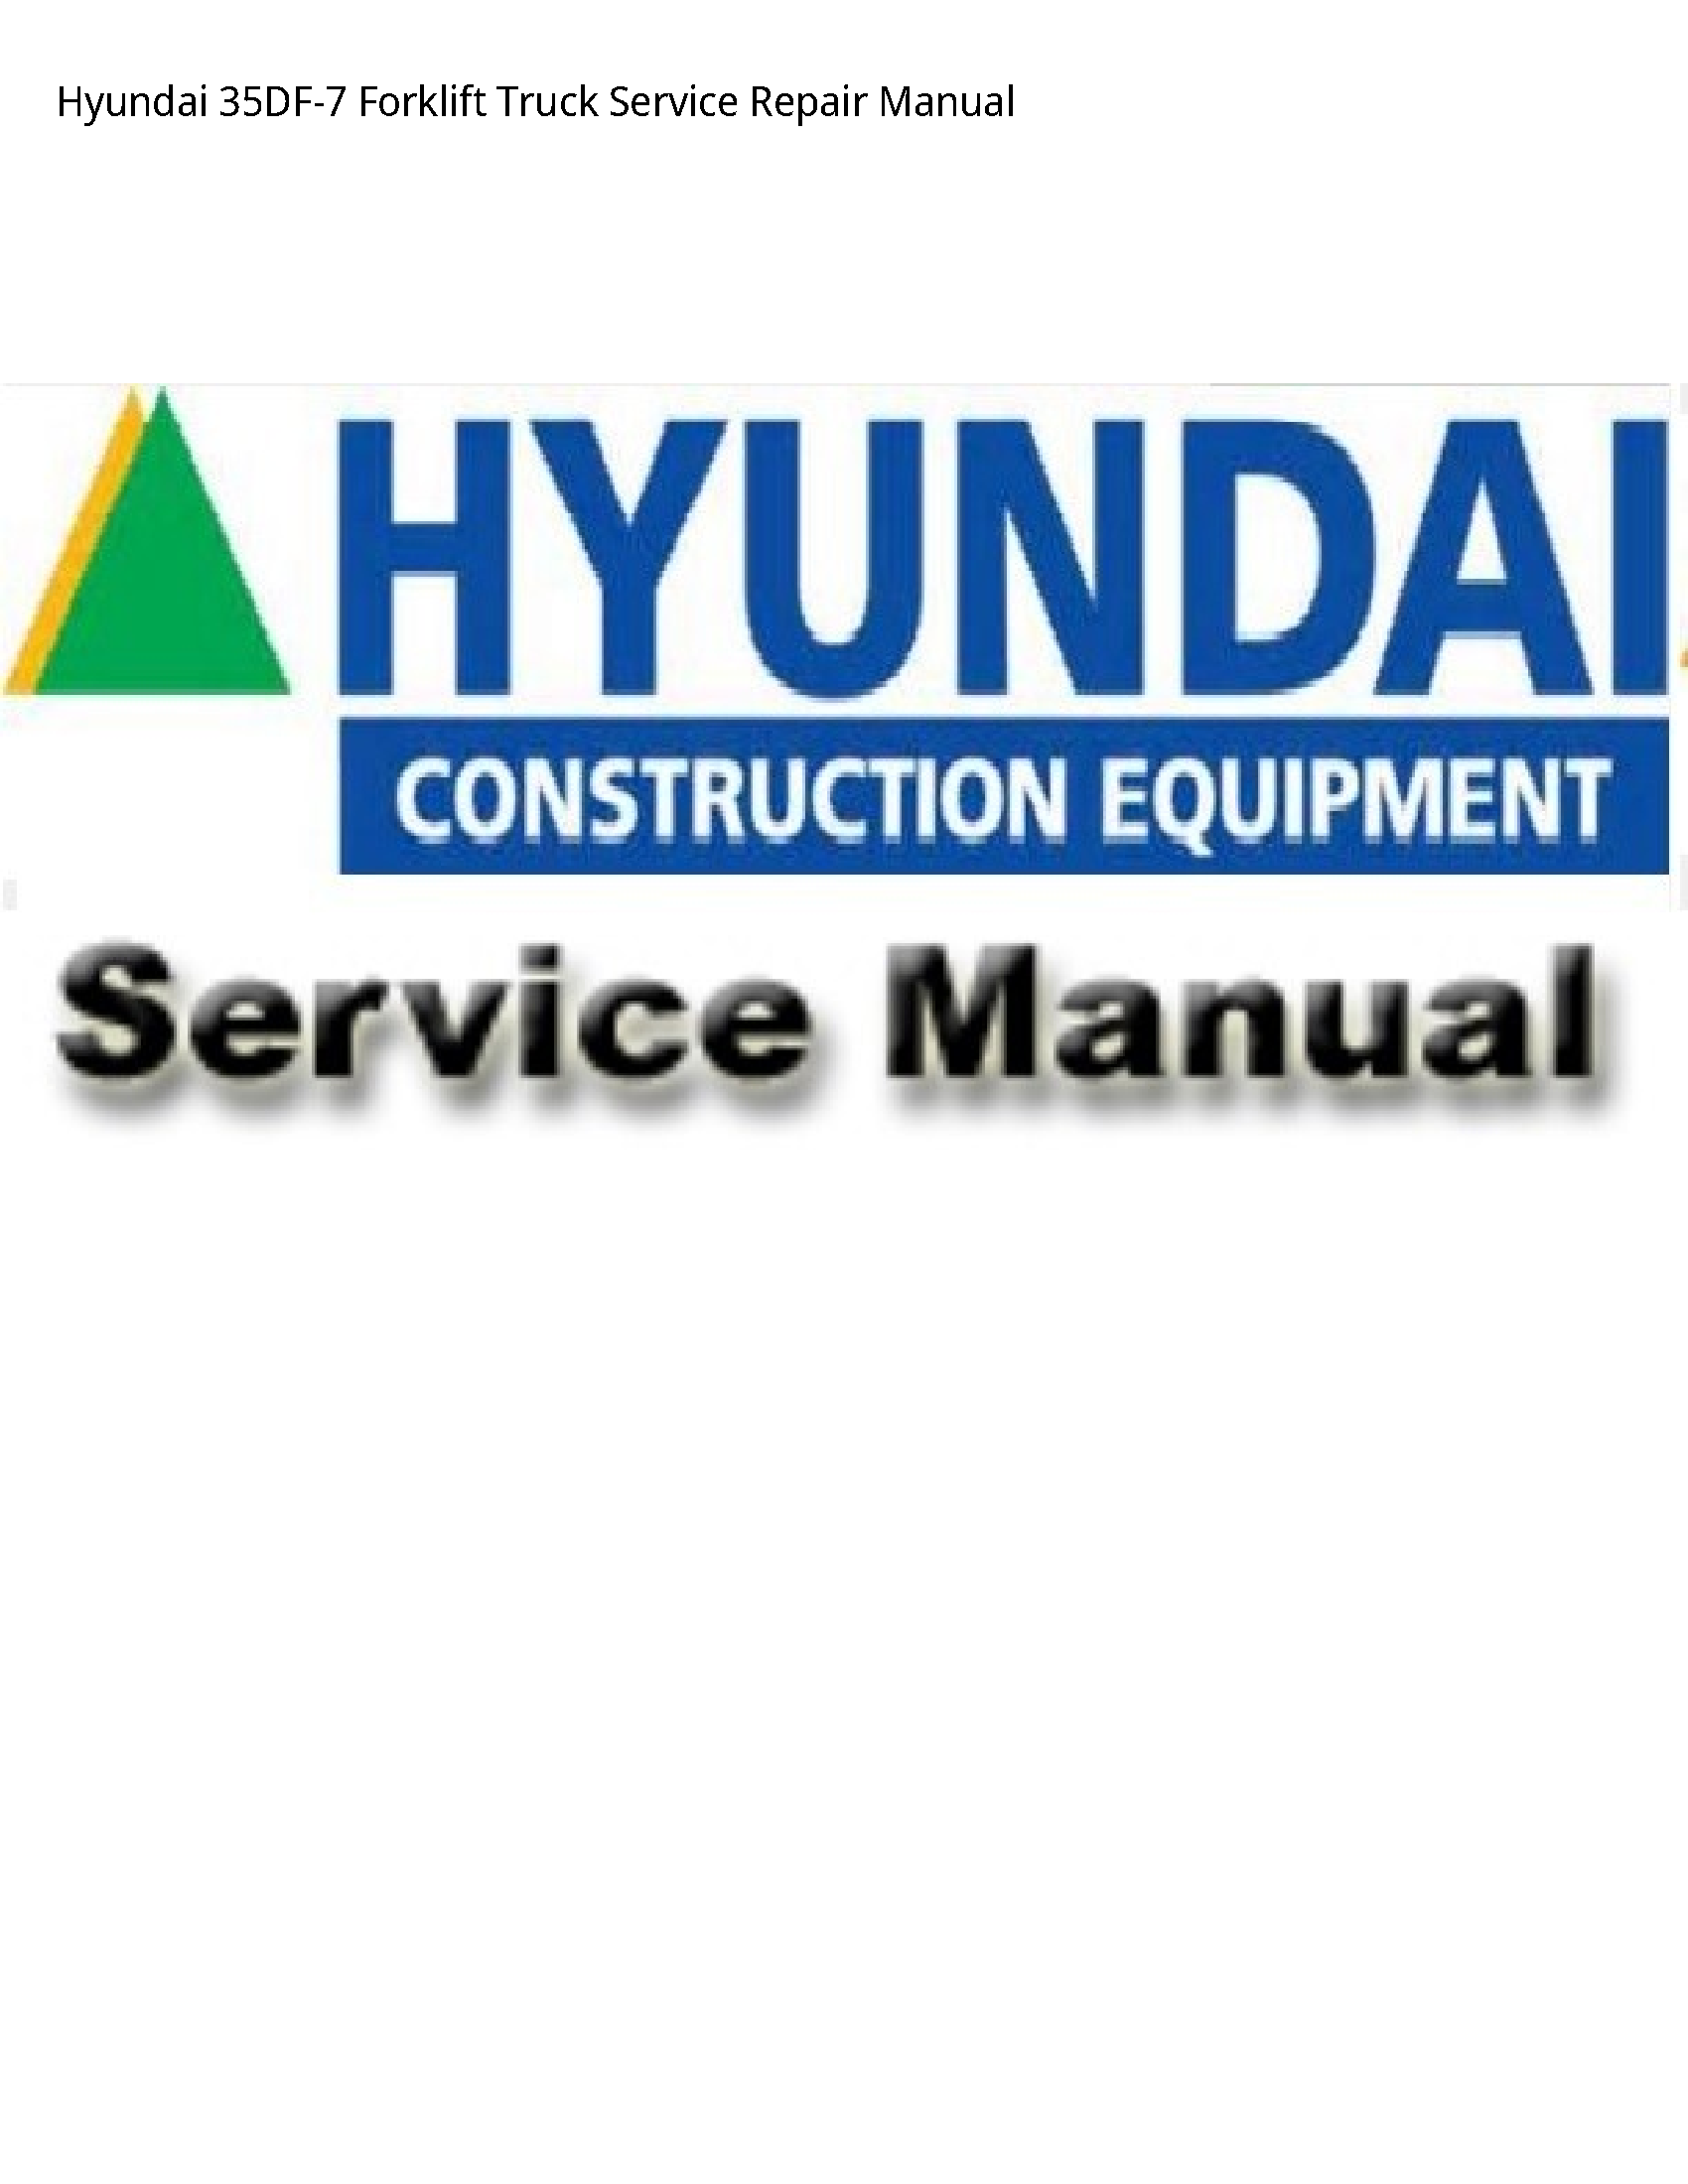 Hyundai 35DF-7 Forklift Truck manual